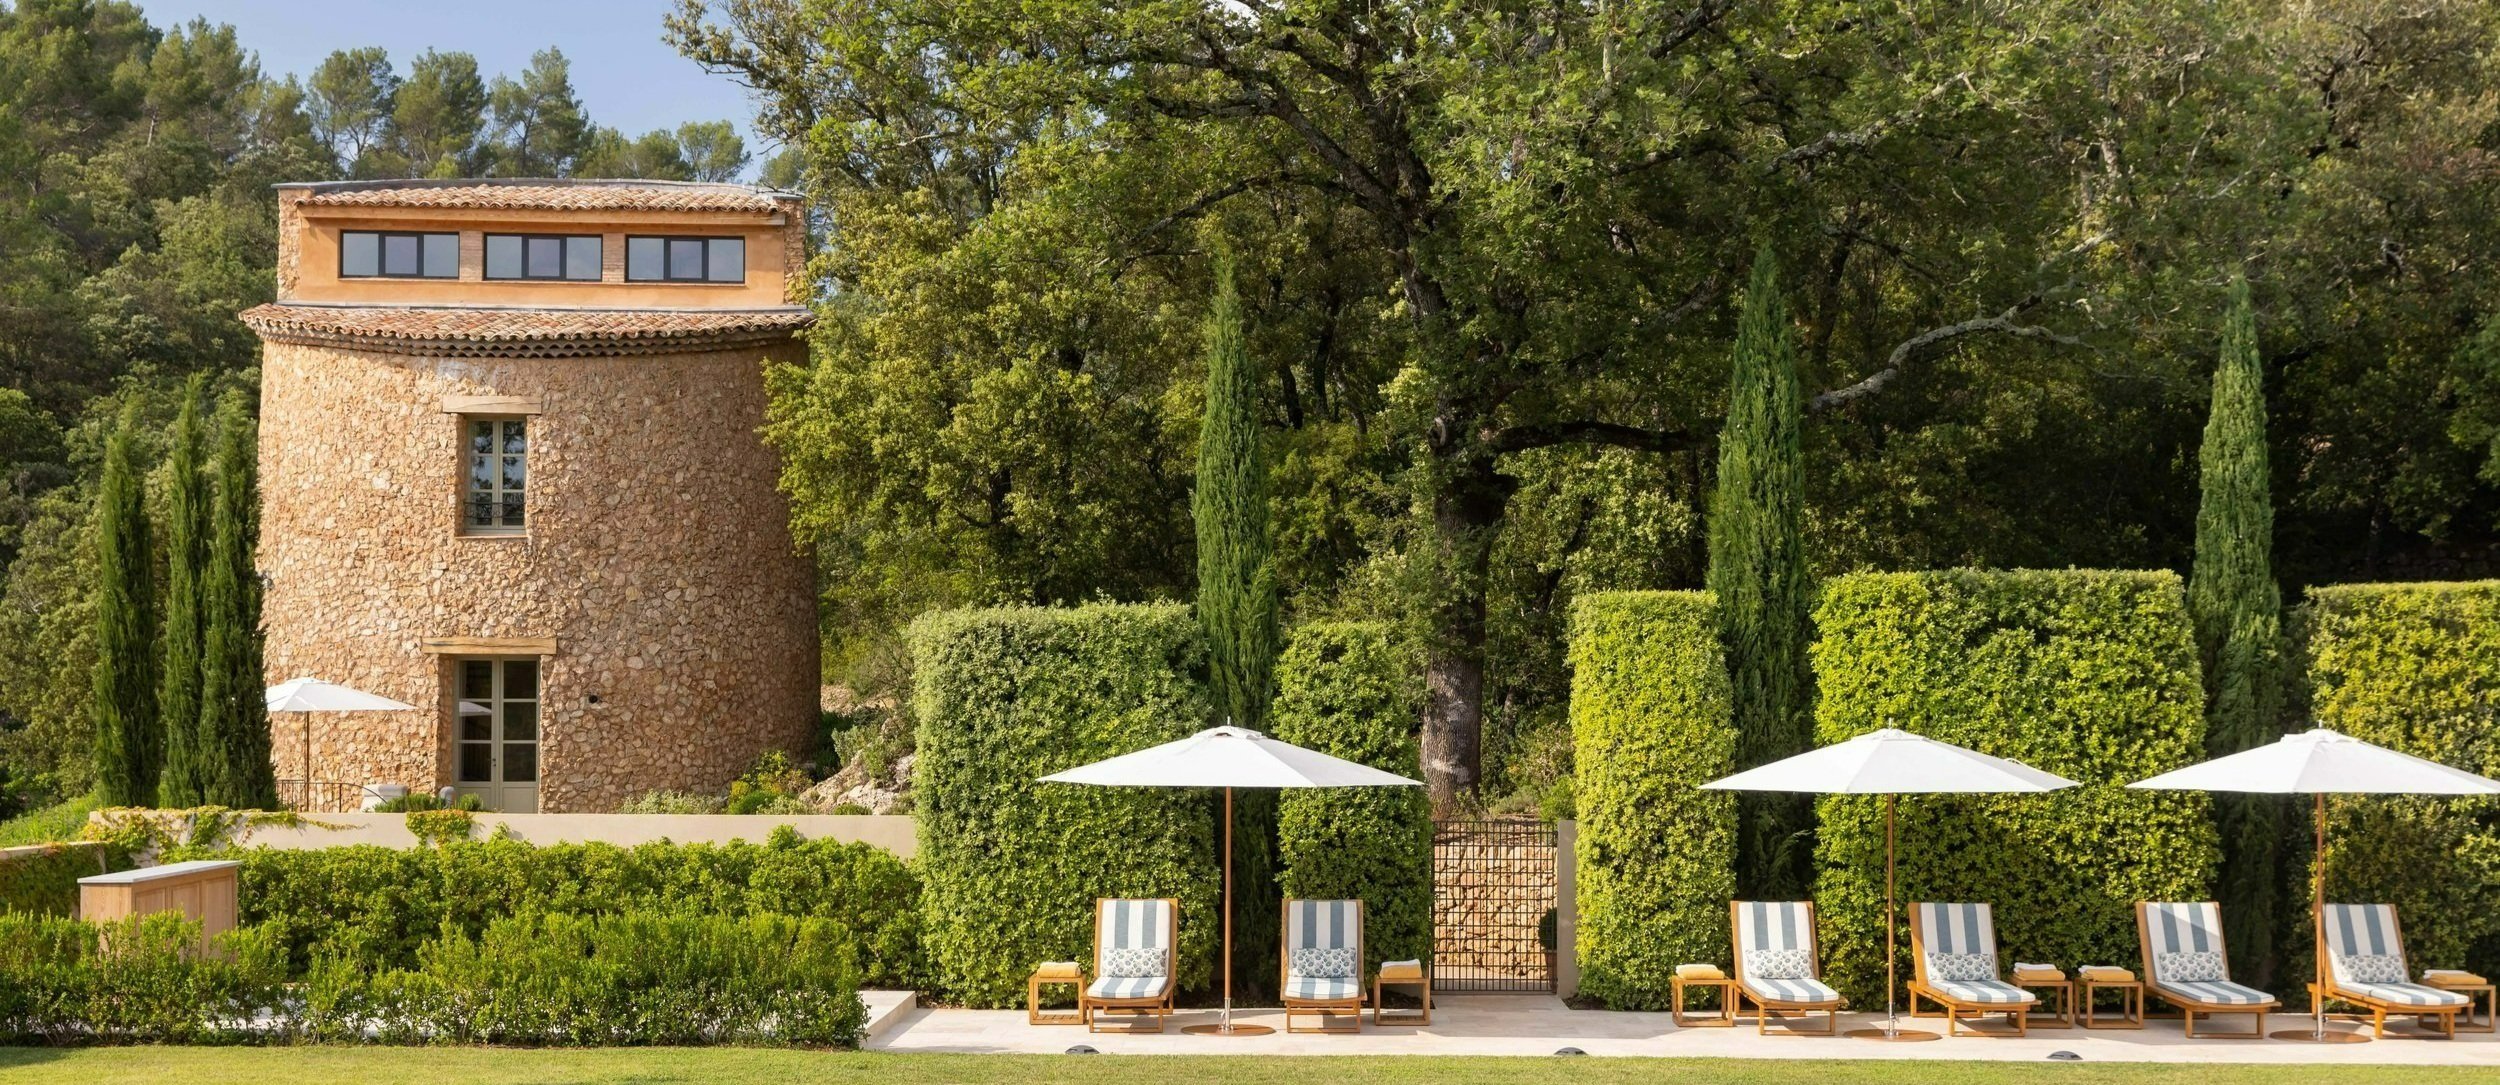 Location domaine de luxe avec piscine en Provence. Site prestigieux de Brignoles